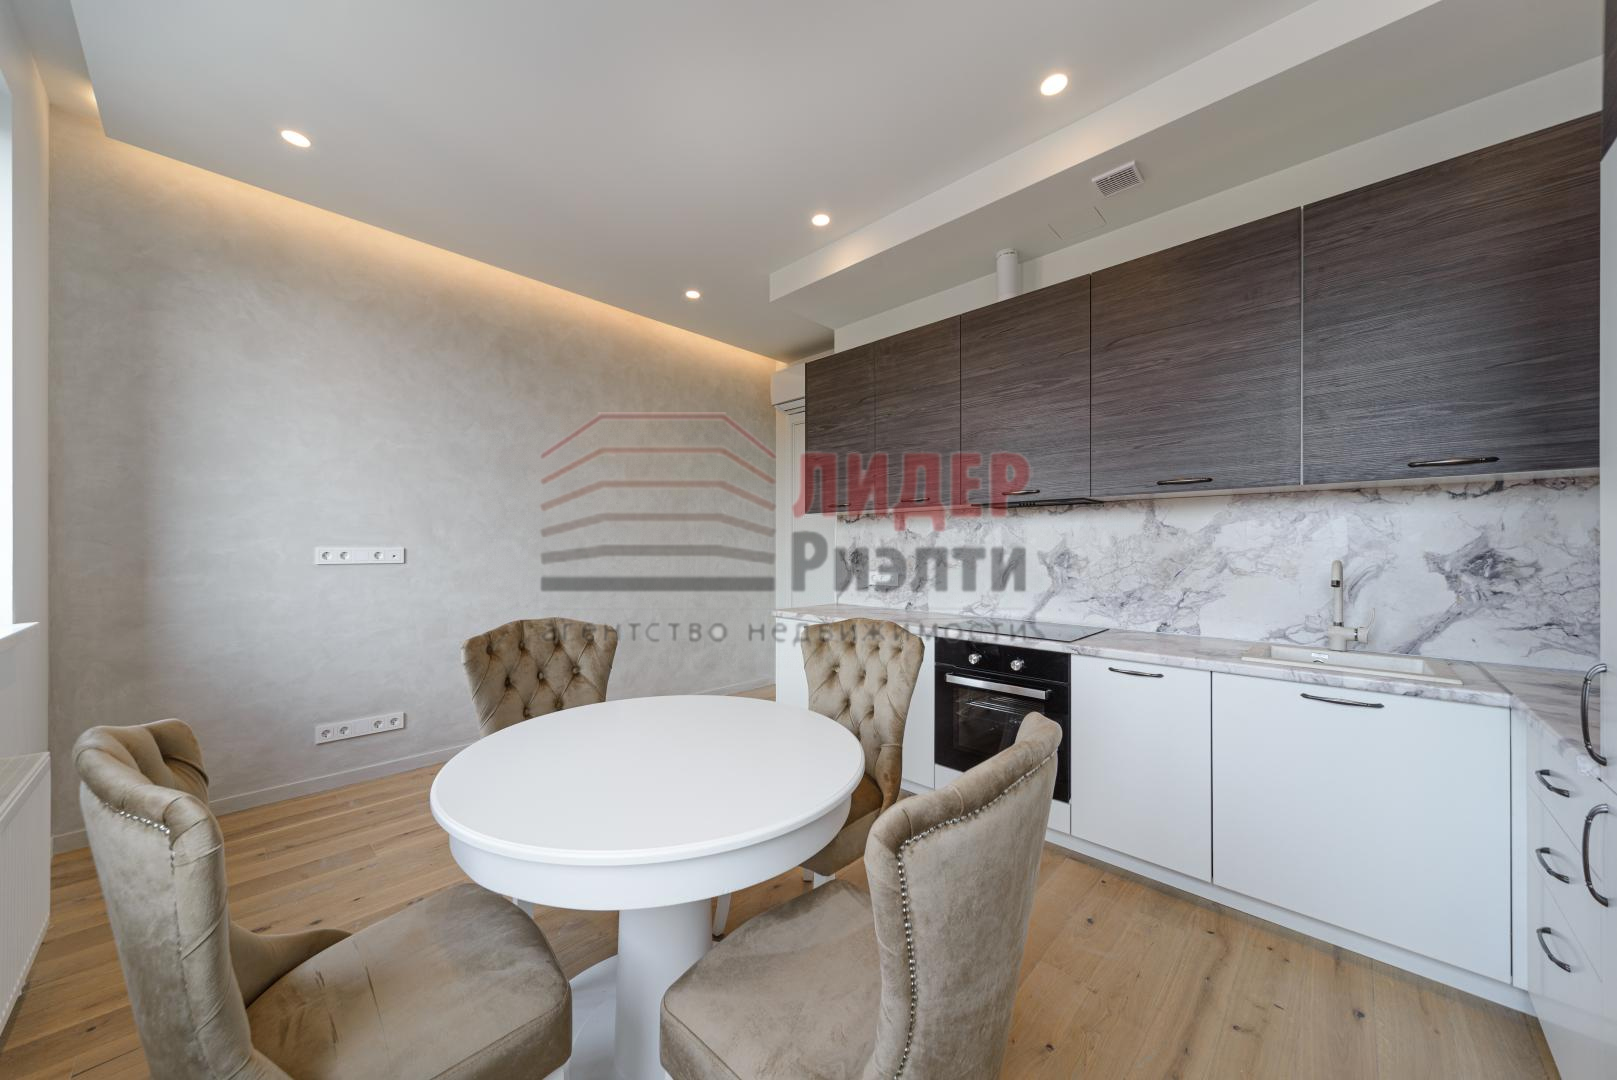 Продам квартиру в Москве по адресу улица Ивана Франко, 6, площадь 936 квм Недвижимость Москва (Россия)